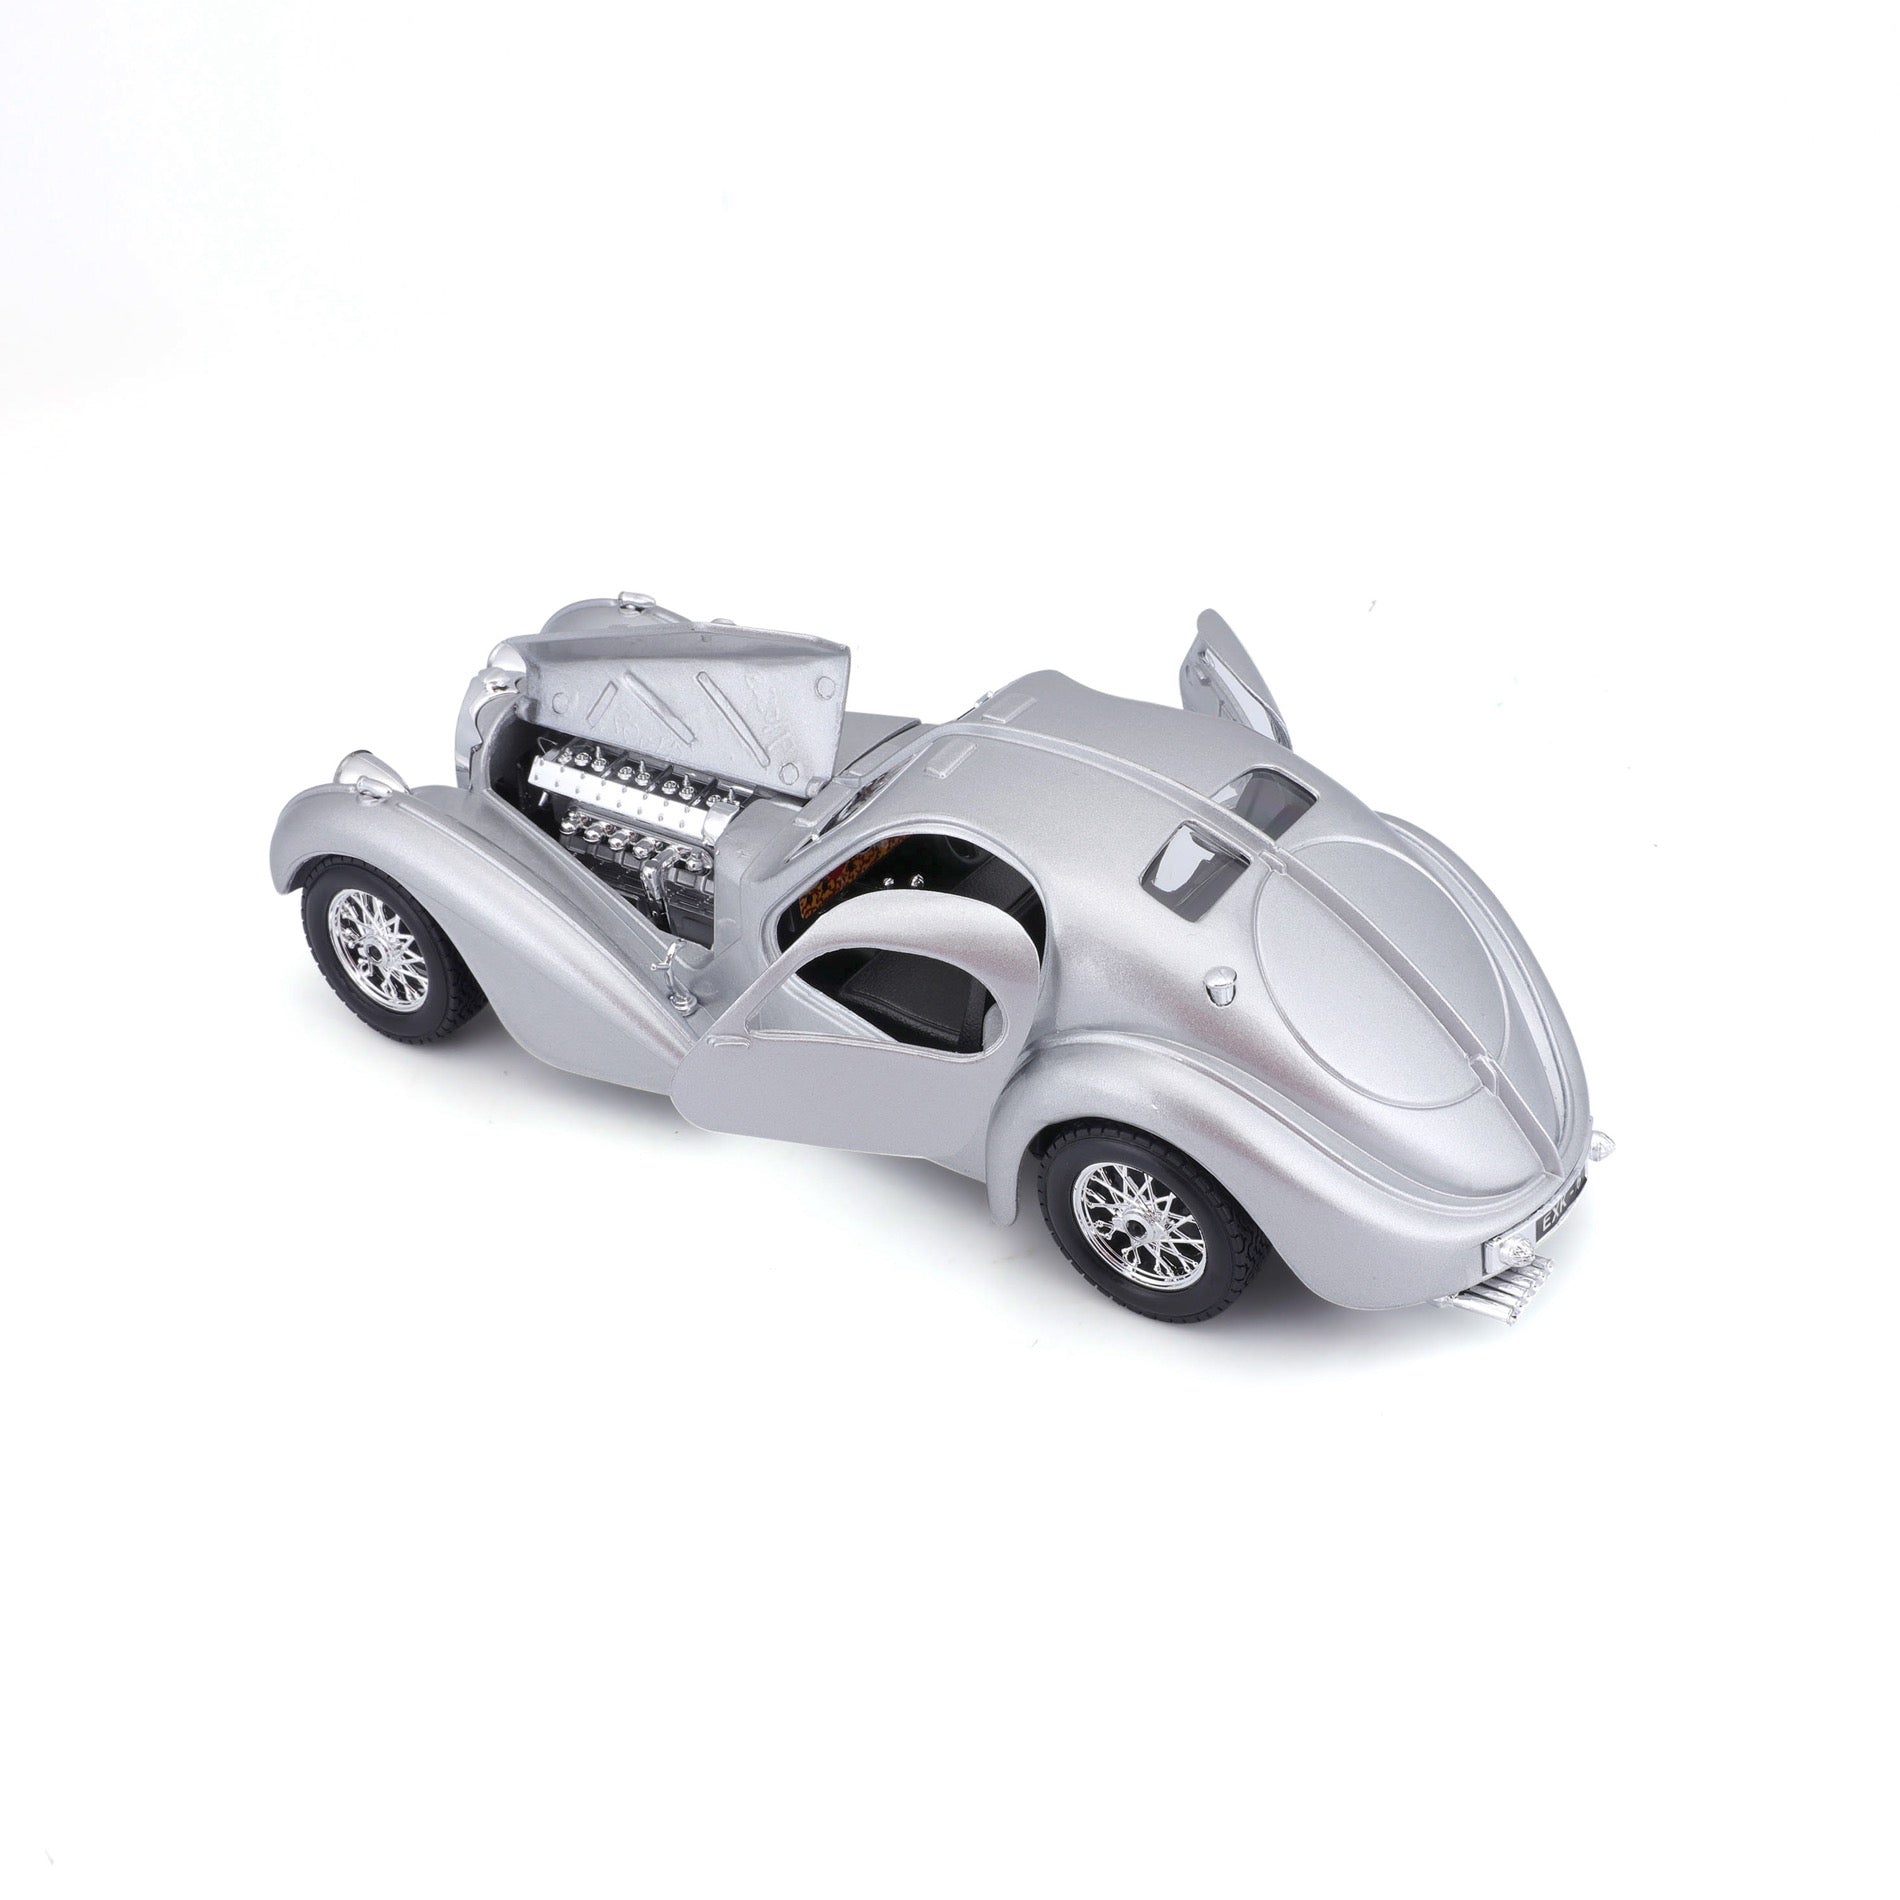 18-22092 Bburago 1:24 Collezione - Bugatti Atlantic Silver